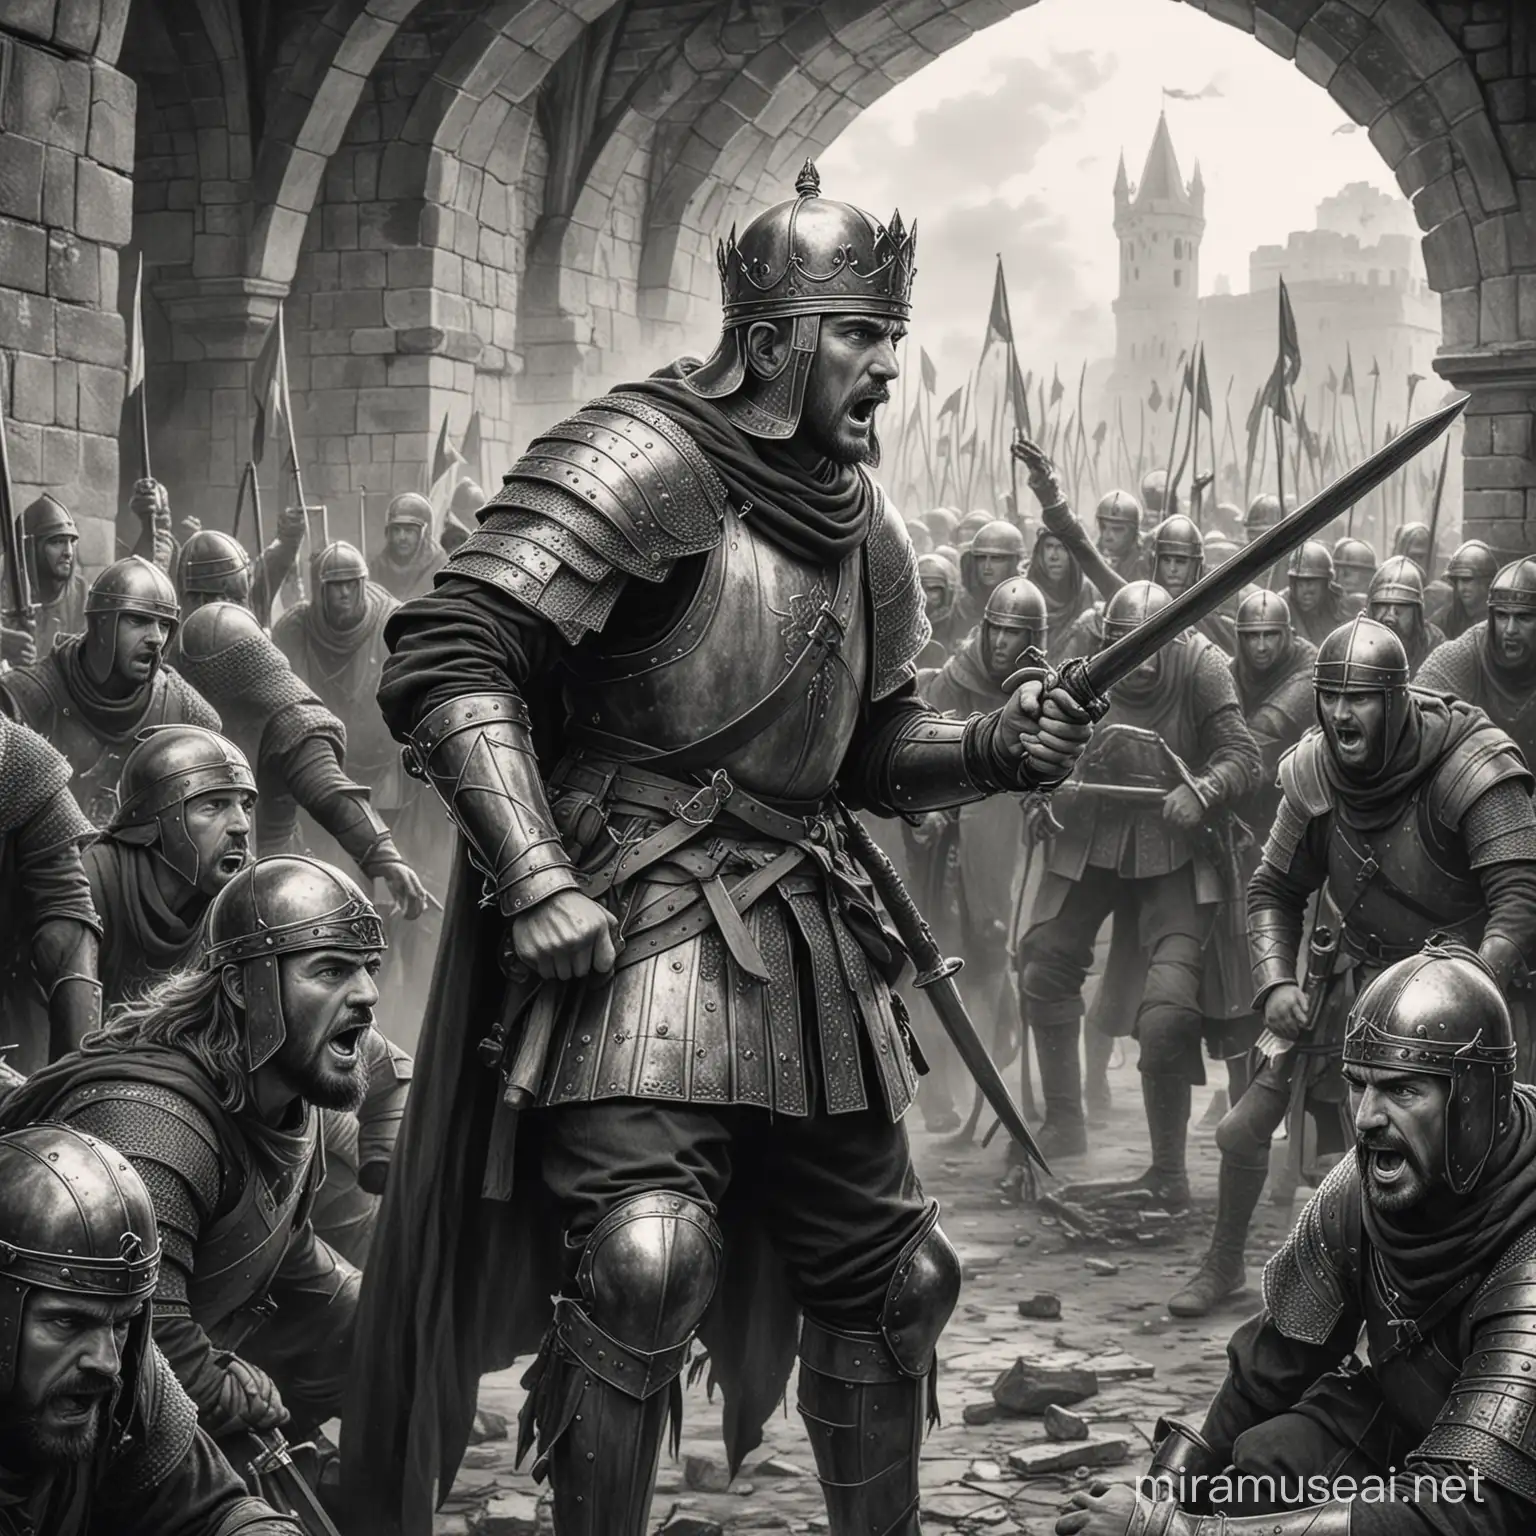 Dibujo en blanco y nego , estilo medieval de soldados amagando al rey y traicionándolo
